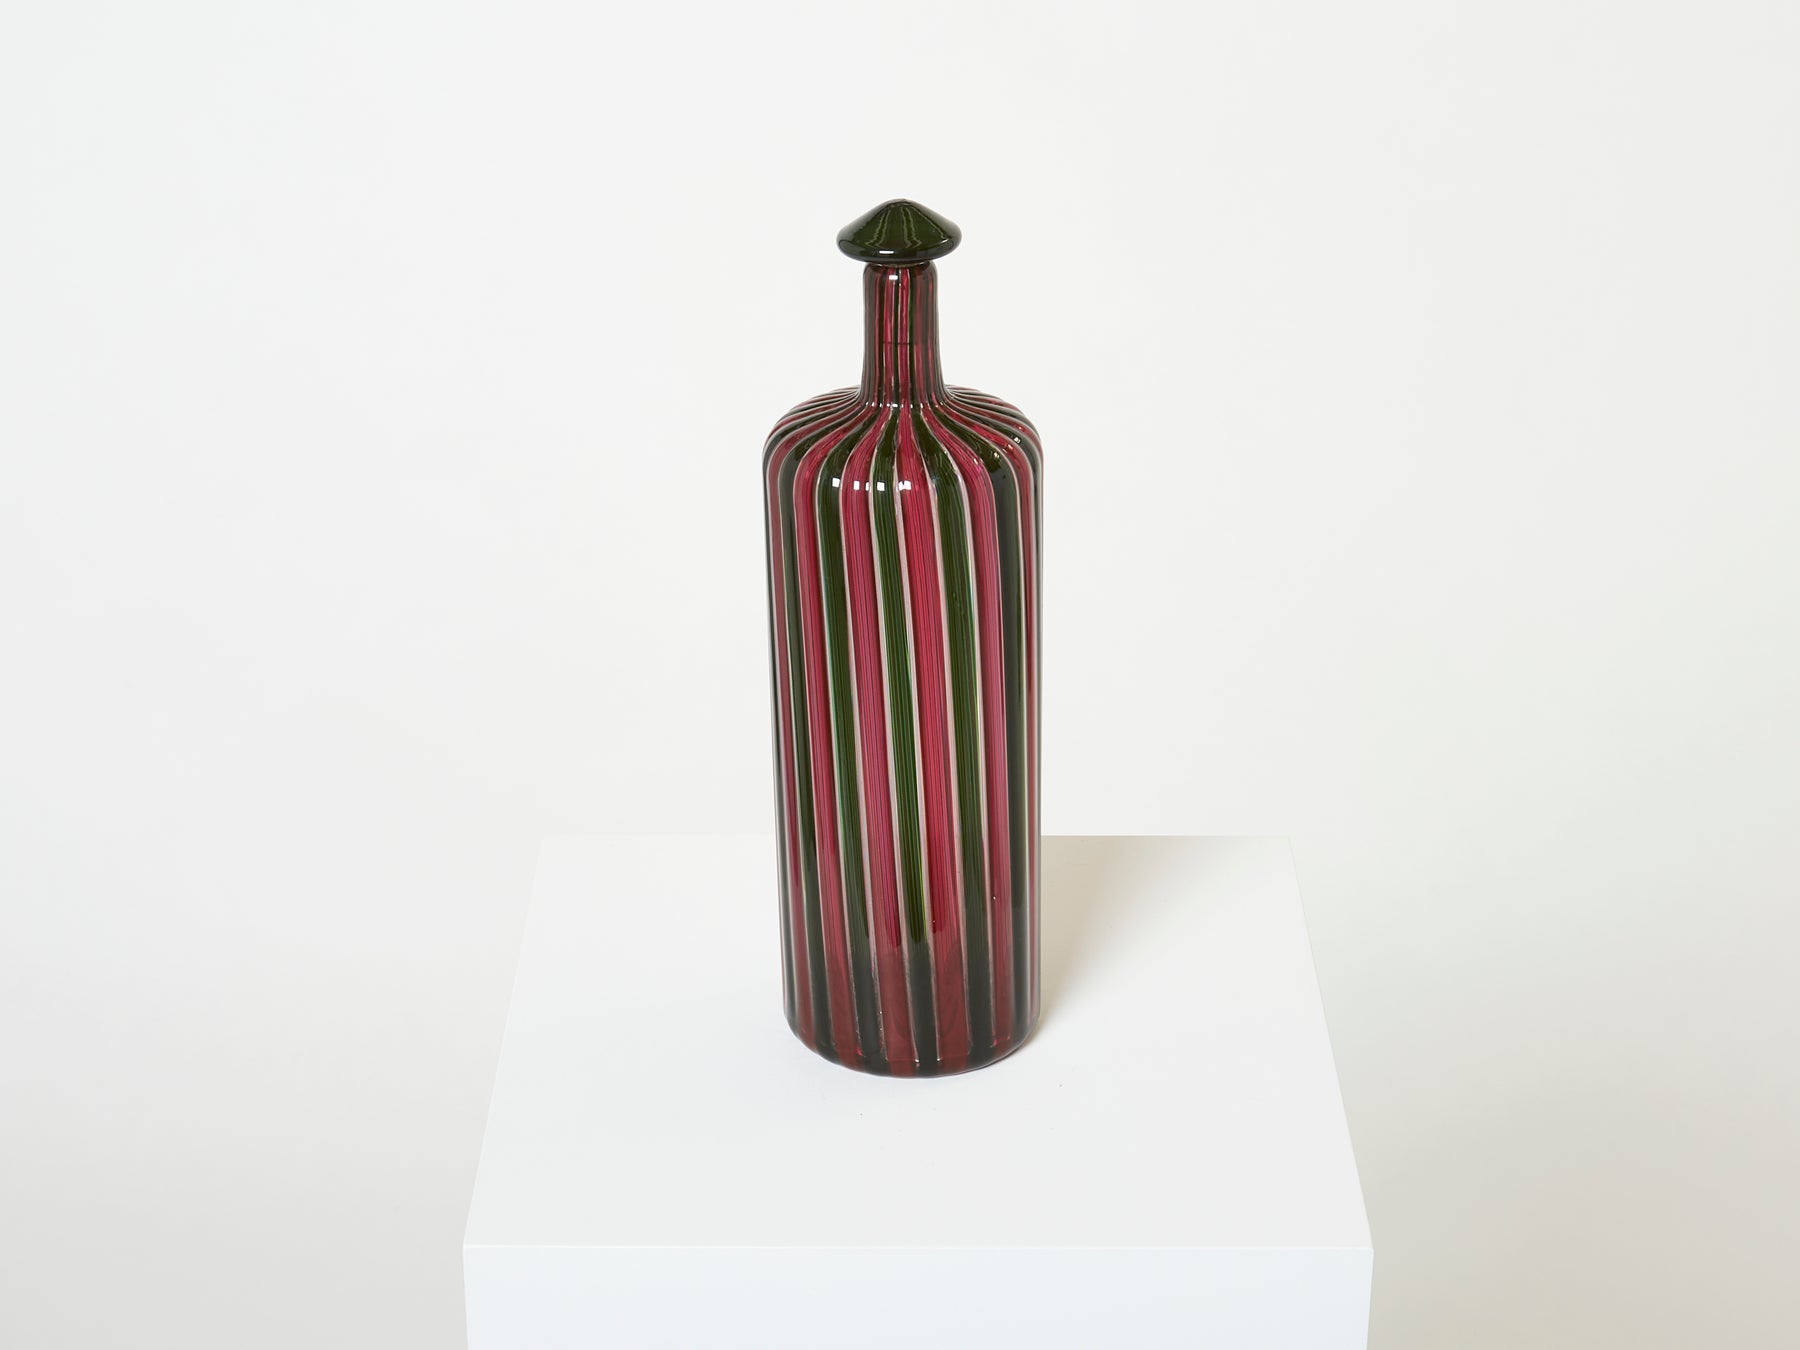 Gio Ponti Paolo Venini Murano glass bottle Morandiana series 1982